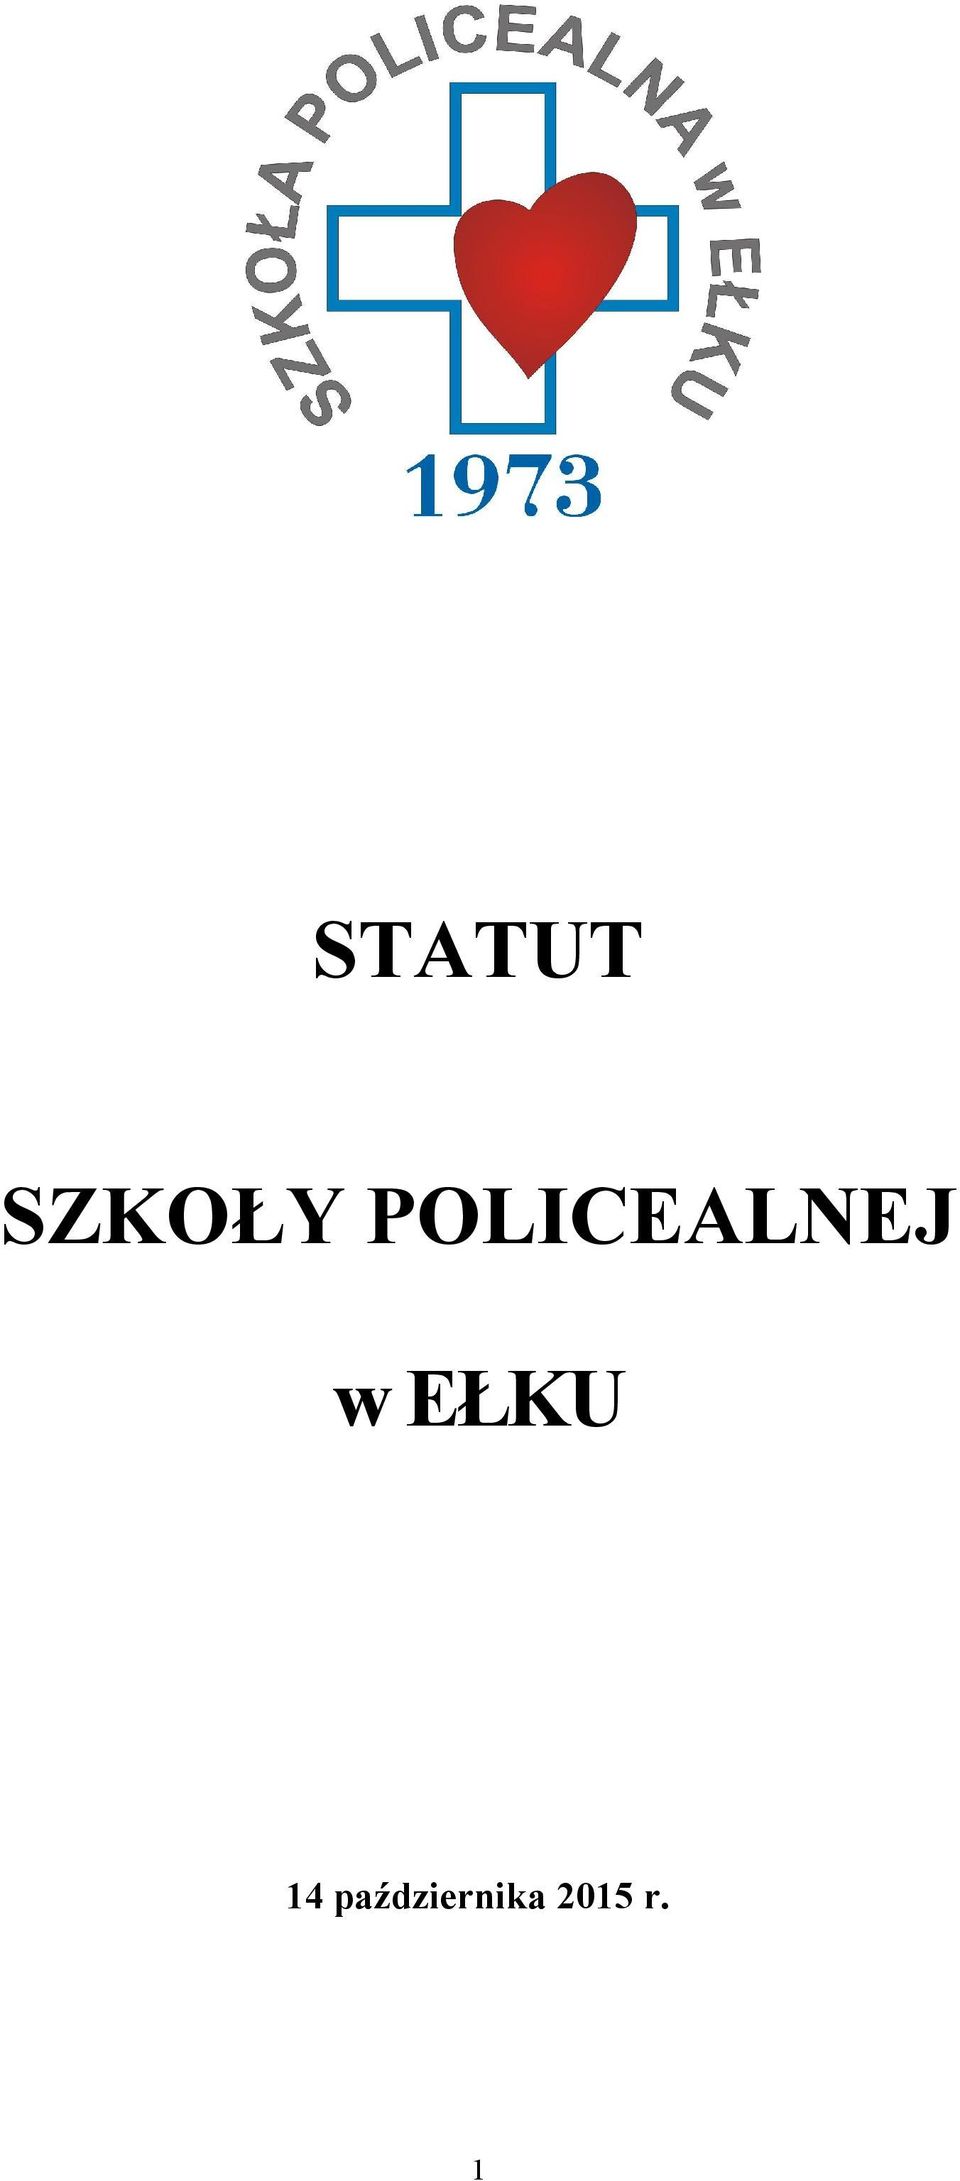 POLICEALNEJ w